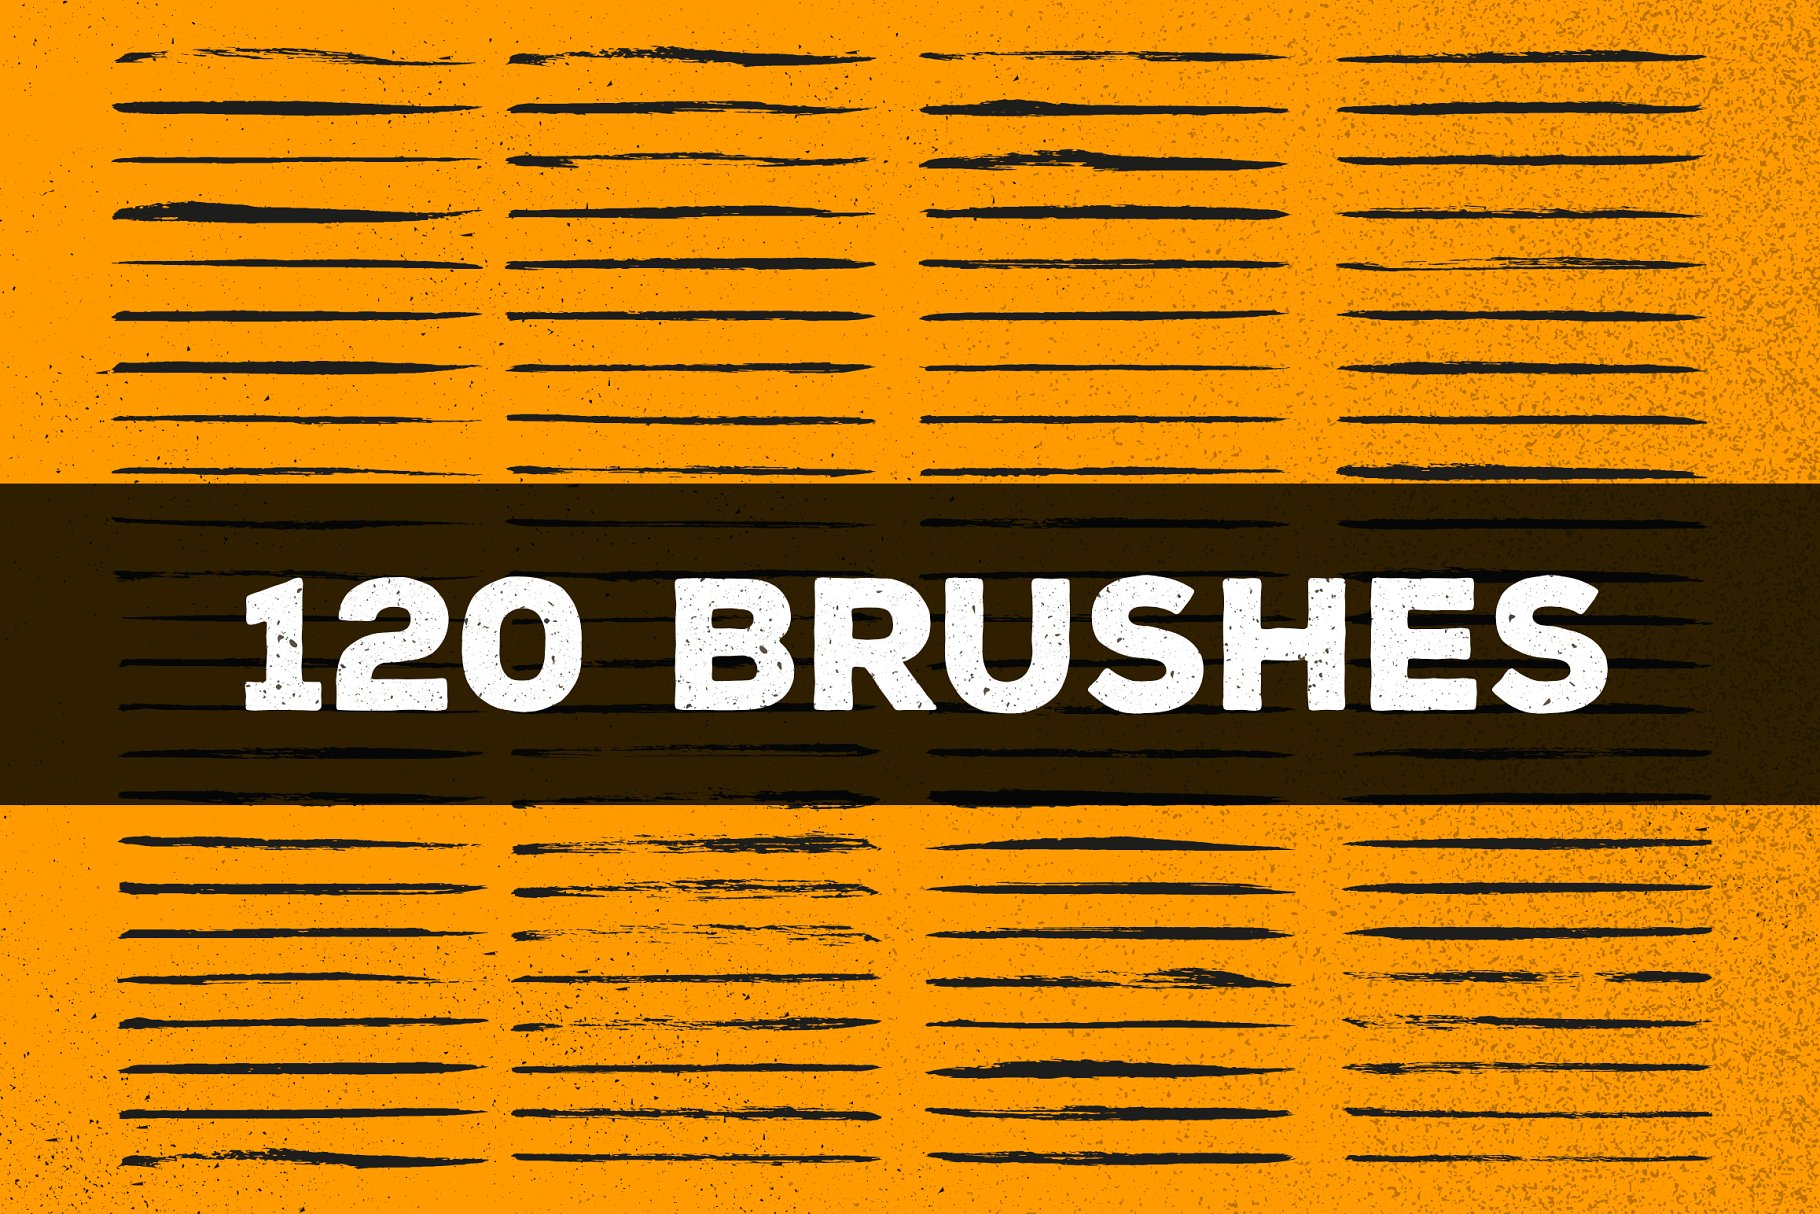 120款手绘画笔AI笔刷大合集 120 Brush Pens for Adobe Illustrator插图(2)